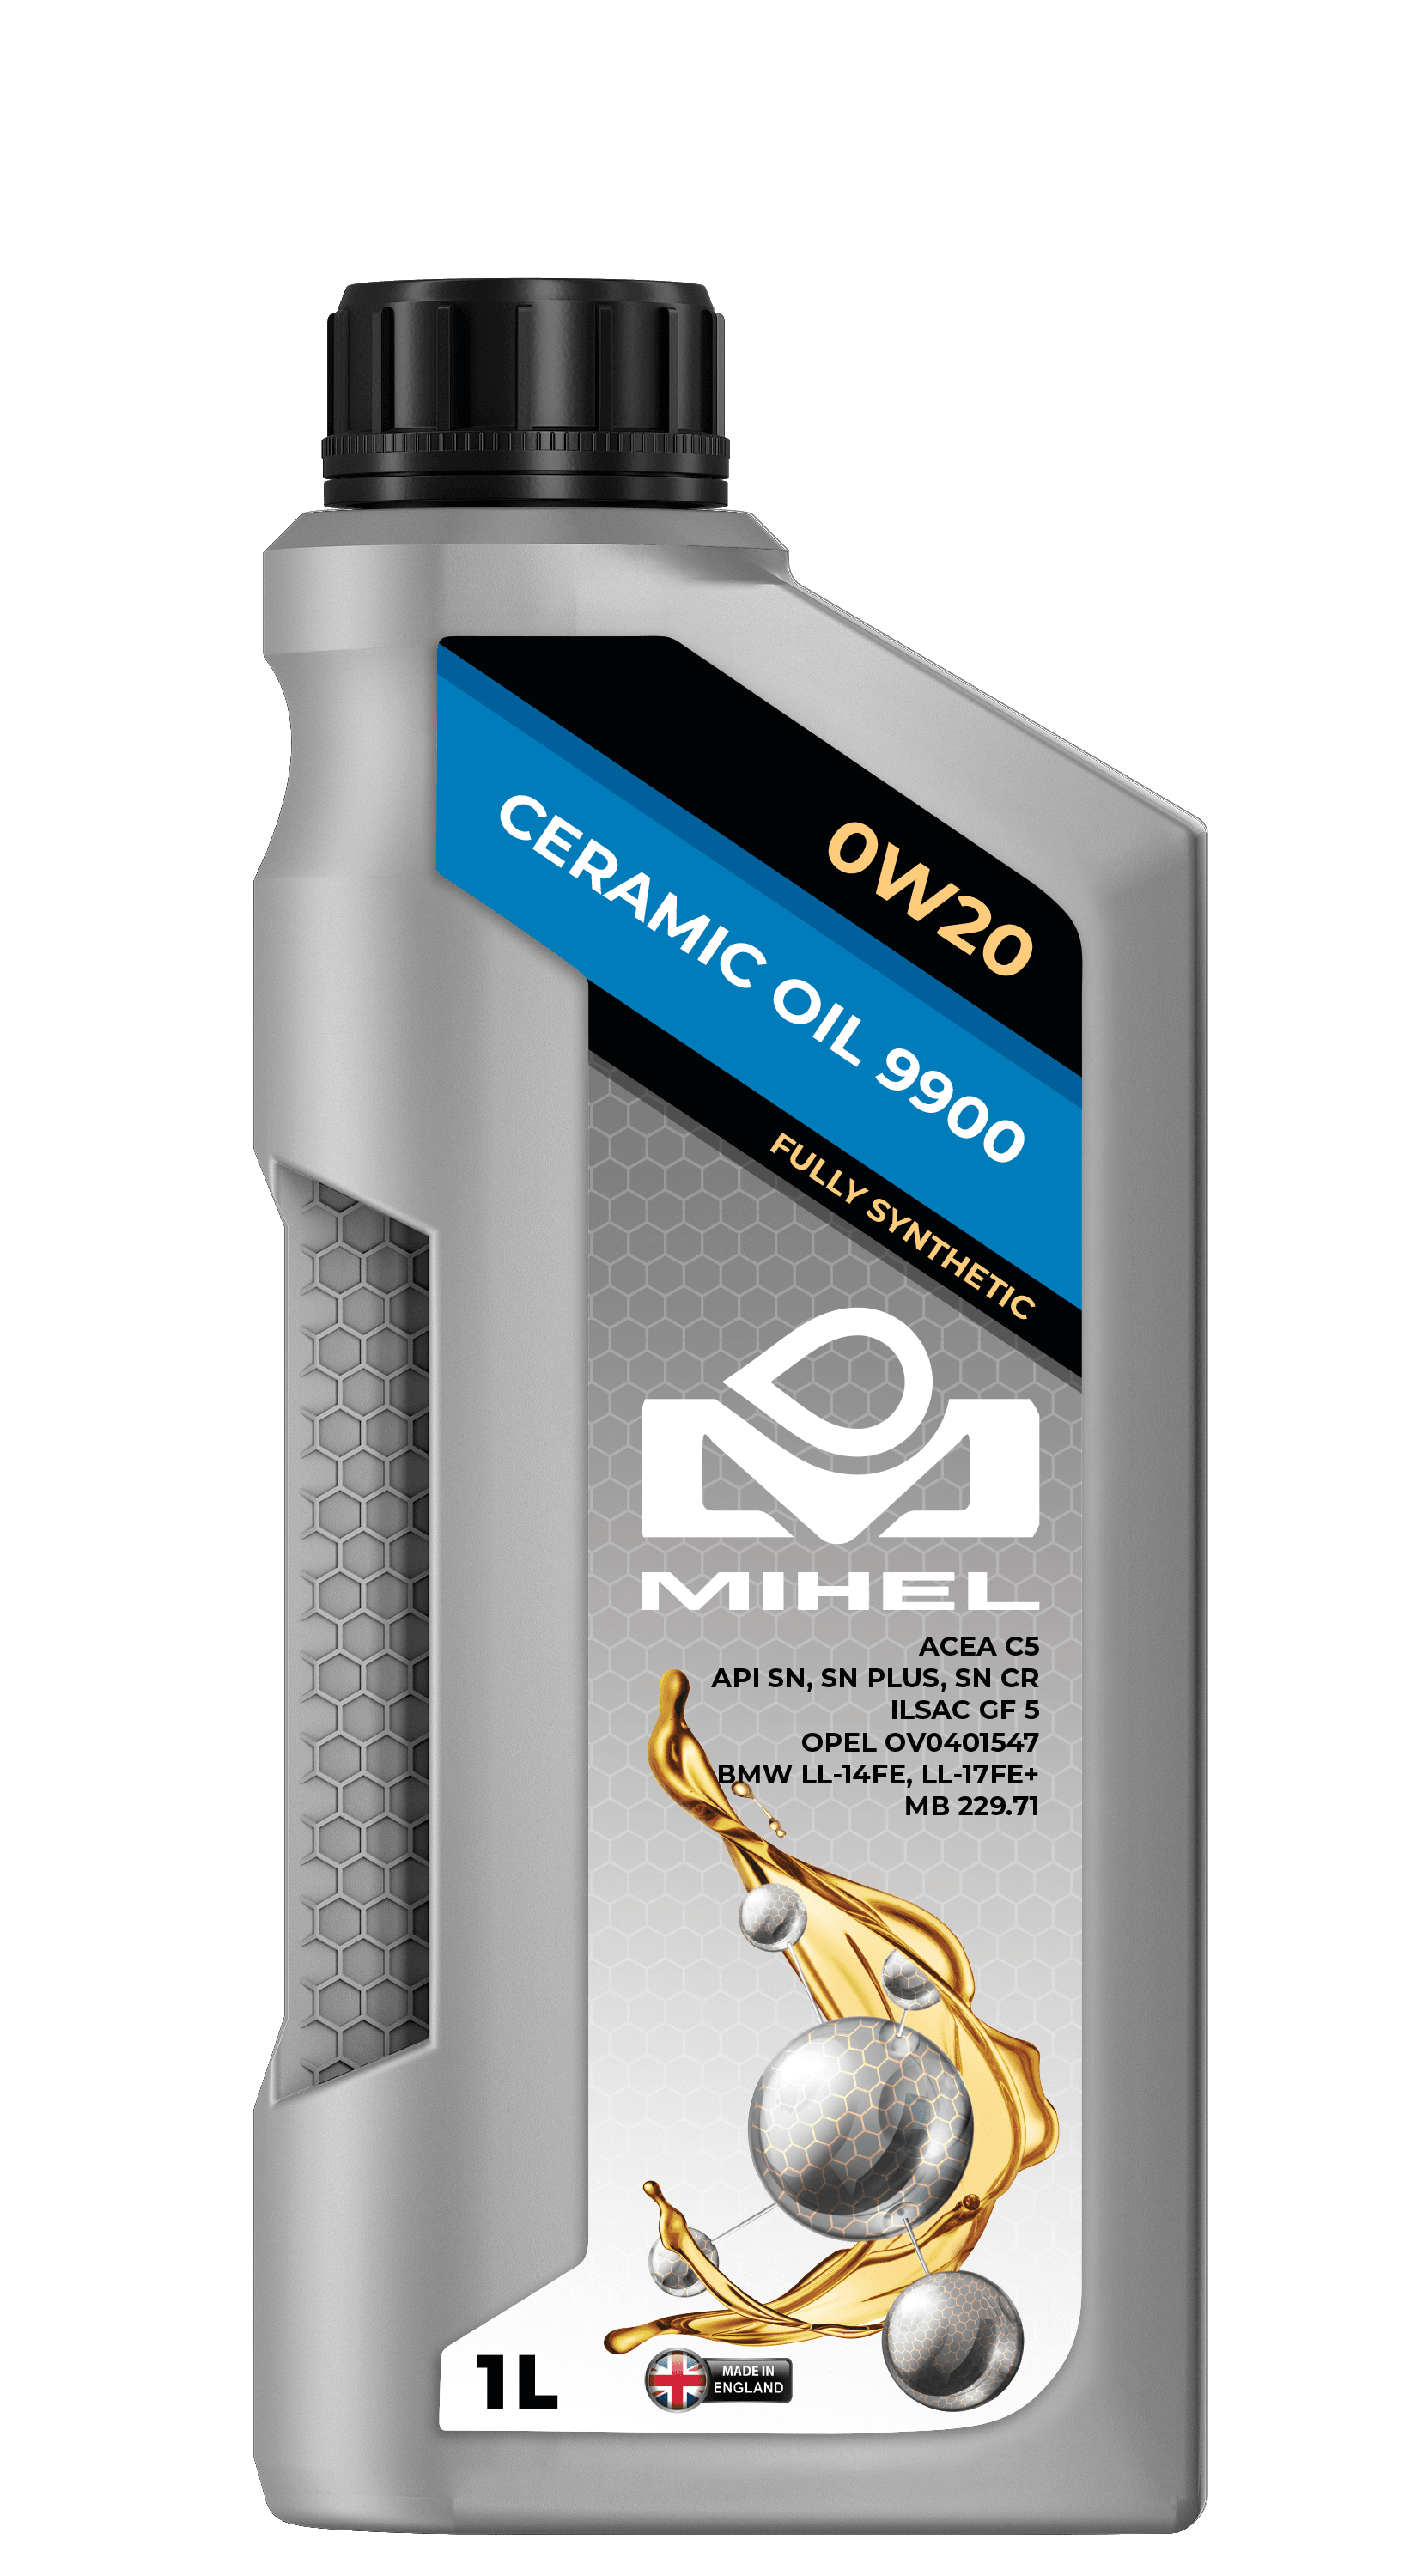 MIHEL Ceramic Oil® 9900 0W20